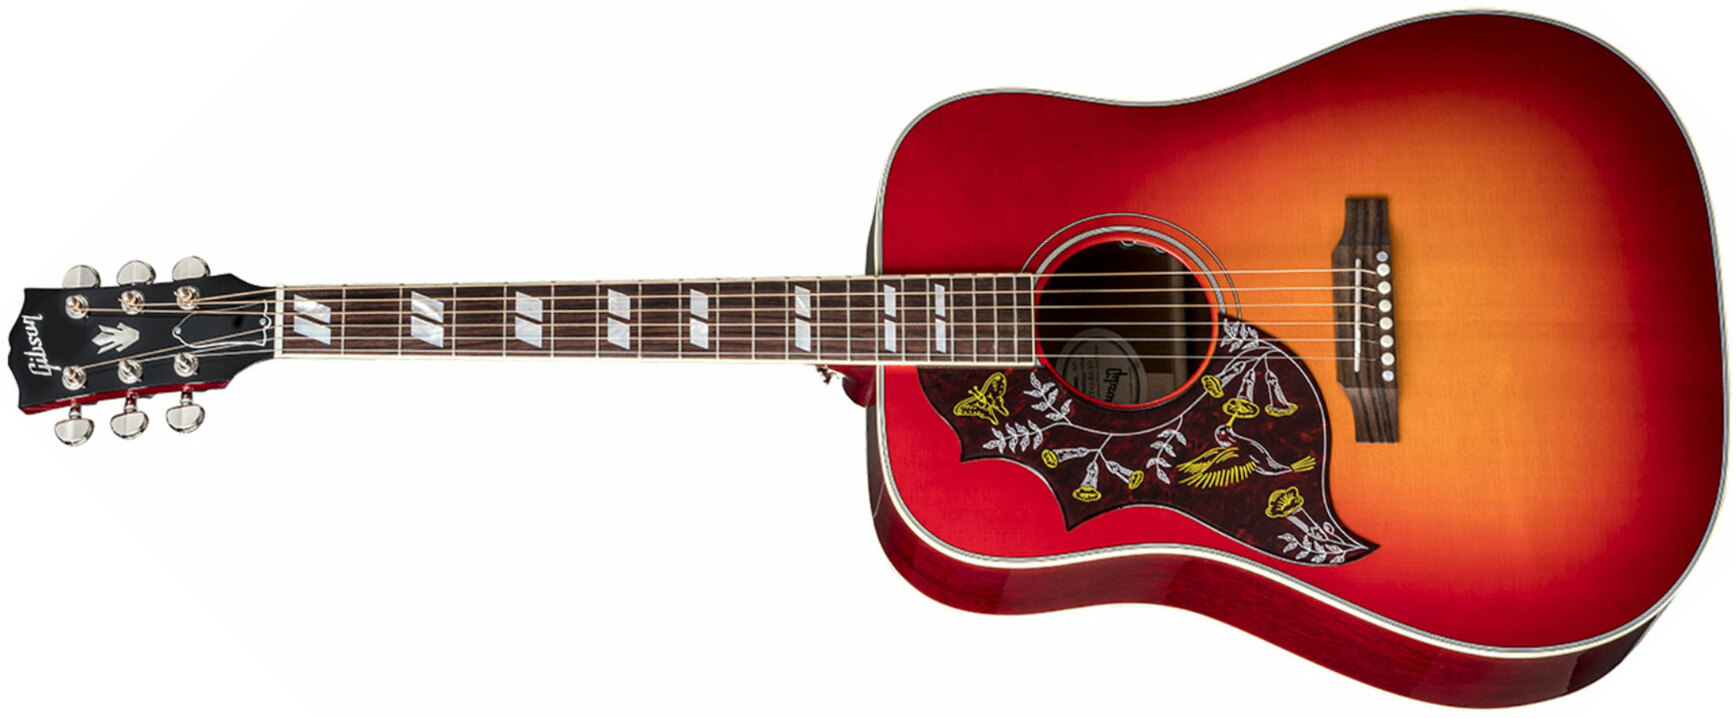 Gibson Hummingbird 2019 Lh Gaucher Dreadnought Epicea Acajou Rw - Vintage Cherry Sunburst - Elektro-akoestische gitaar - Main picture